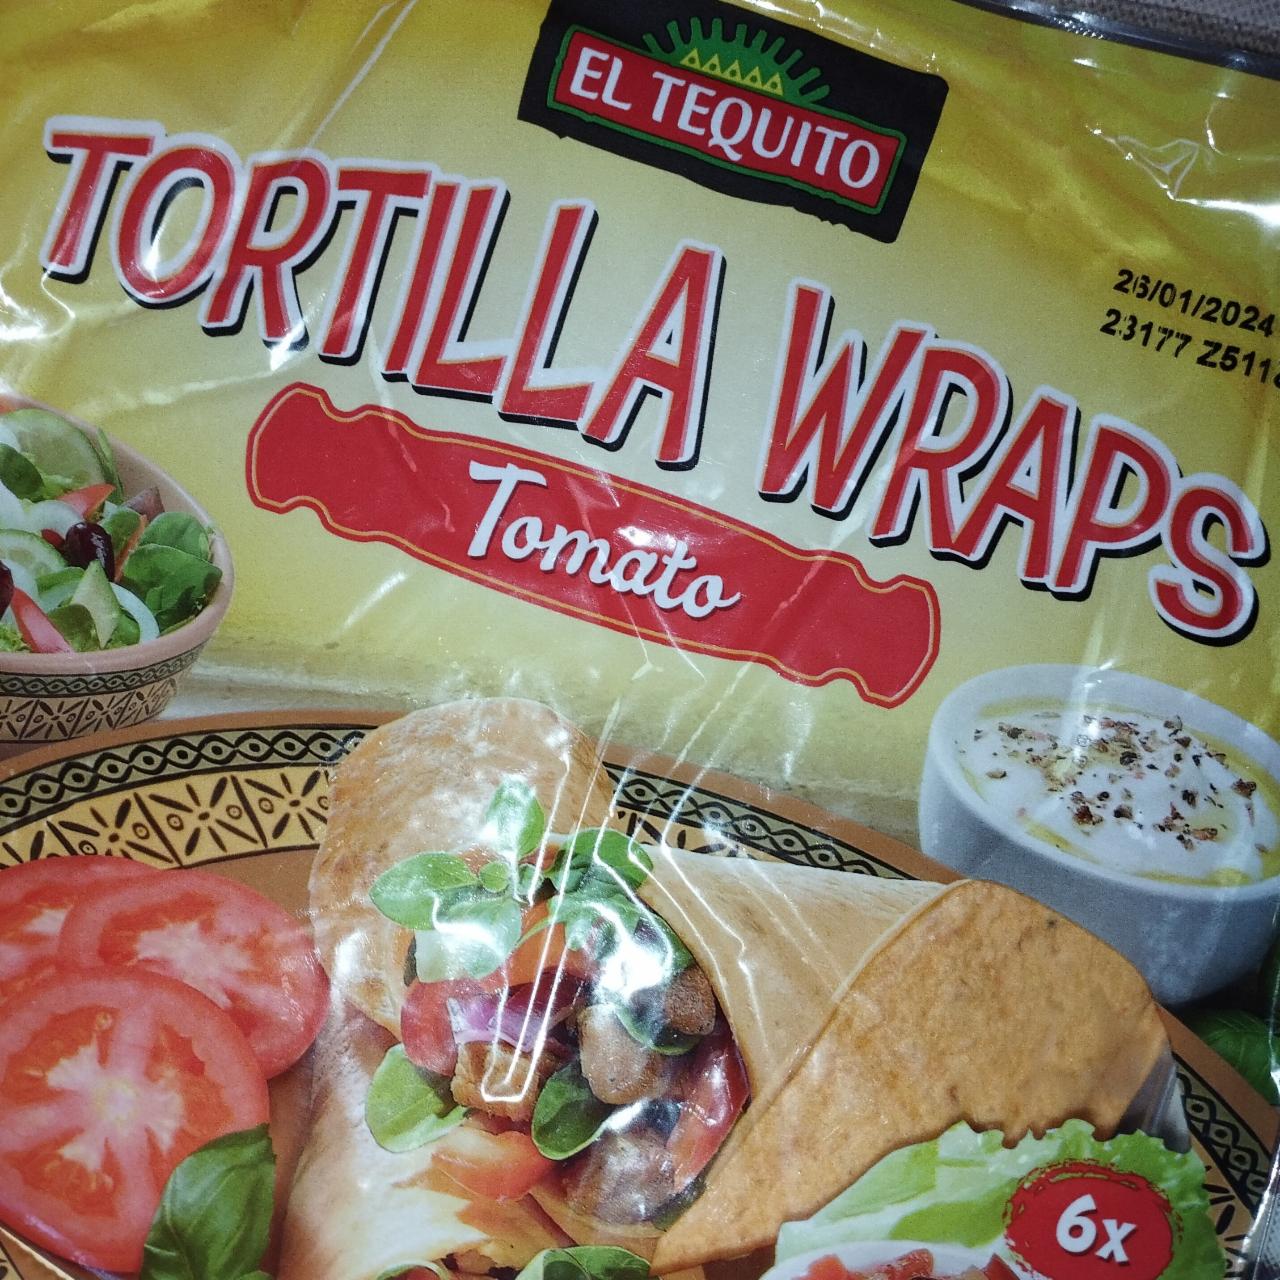 Zdjęcia - Tortilla wraps tomato El Tequito